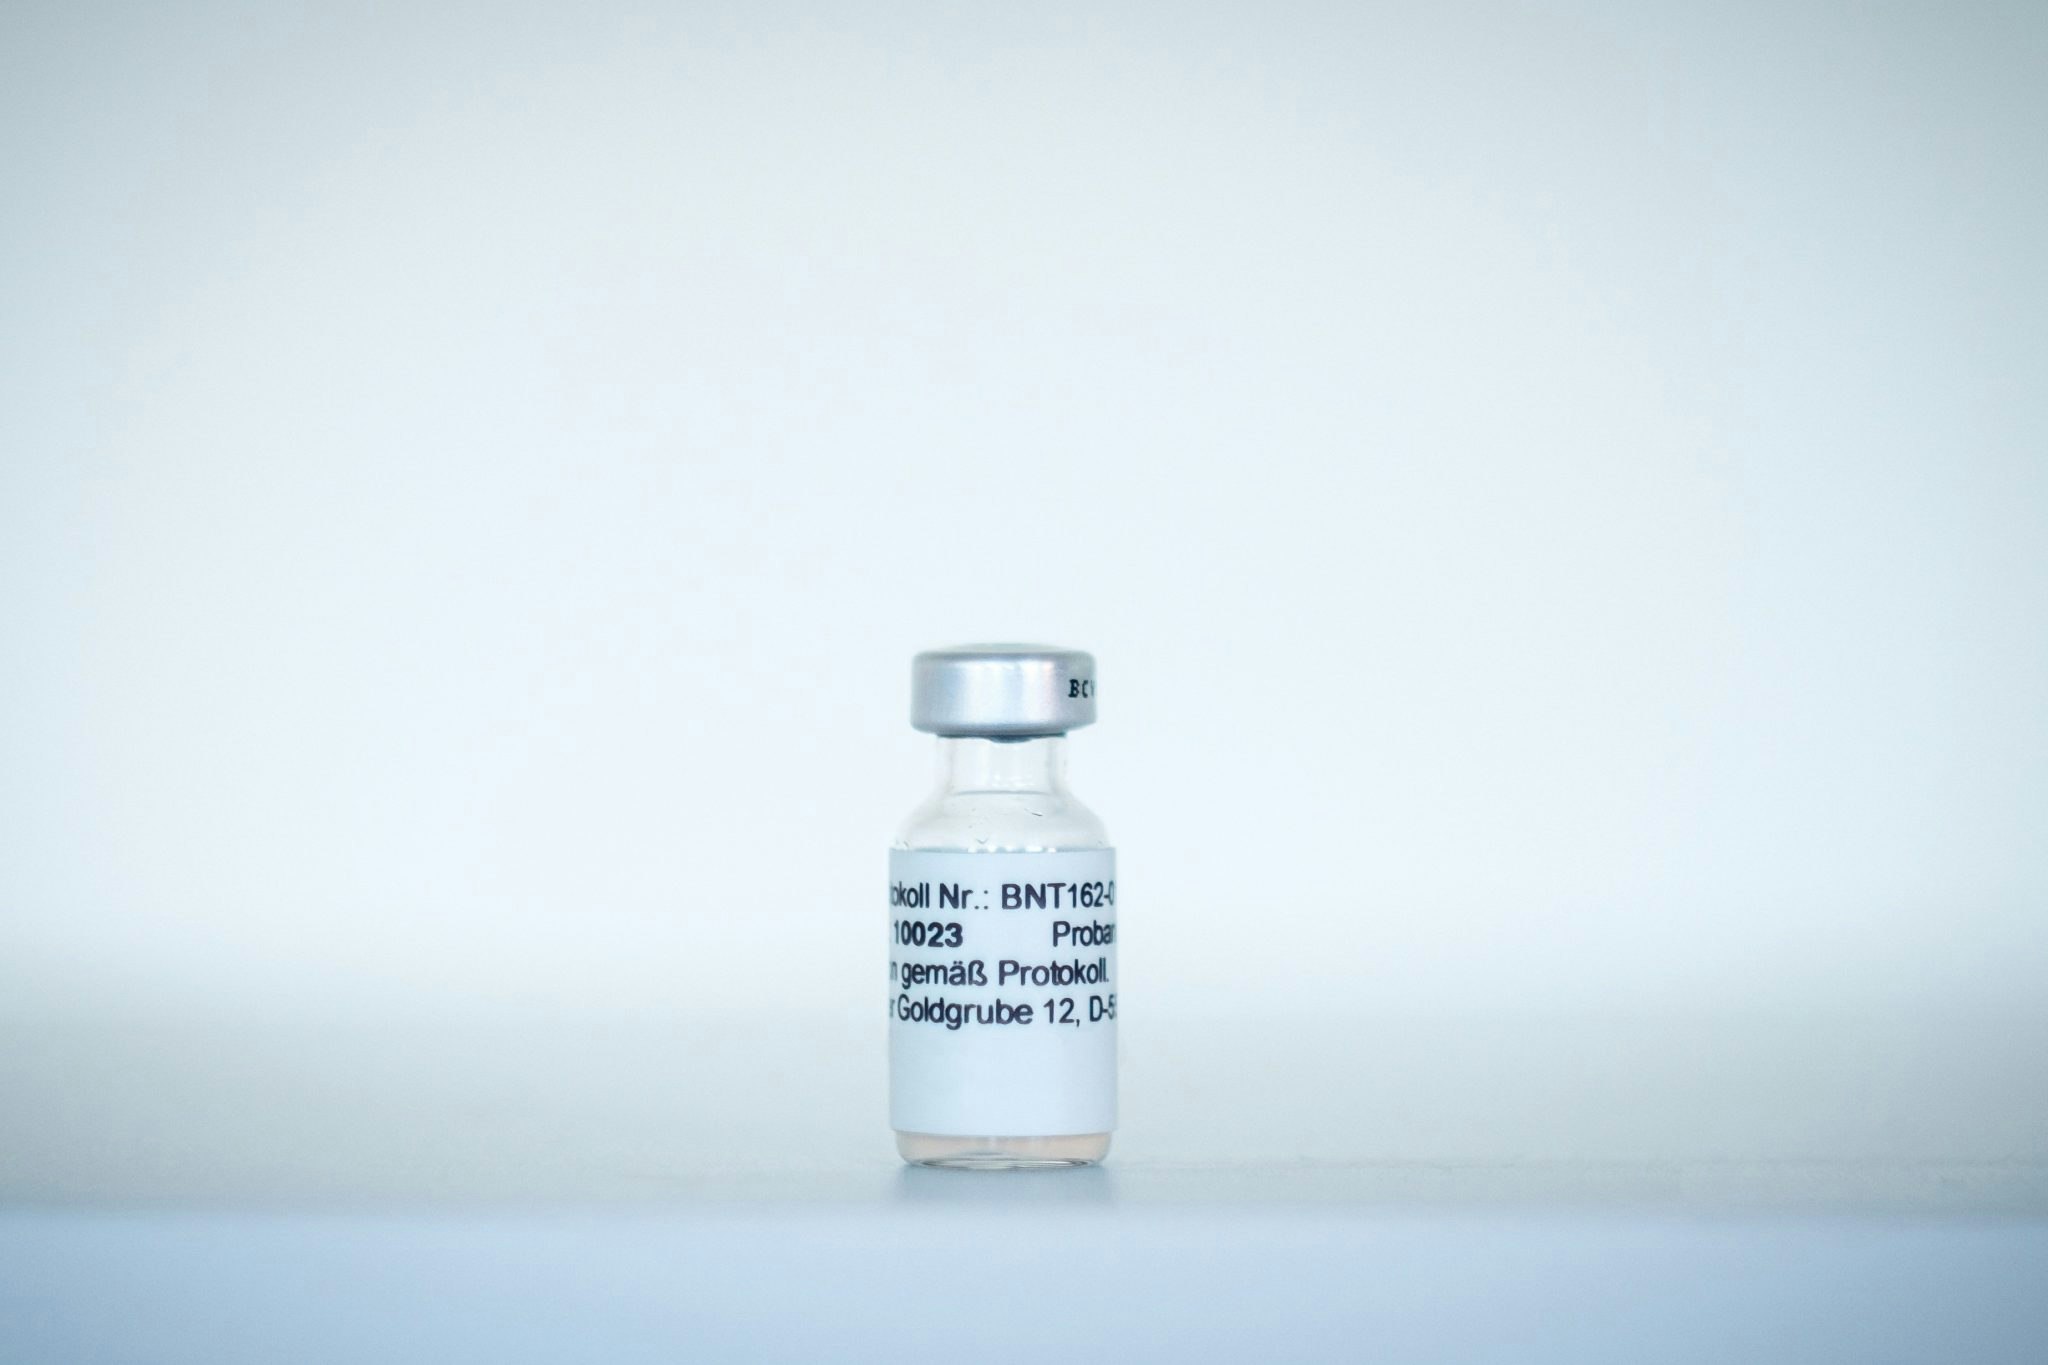 BNT162: BioNTech's Coronavirus Vaccine